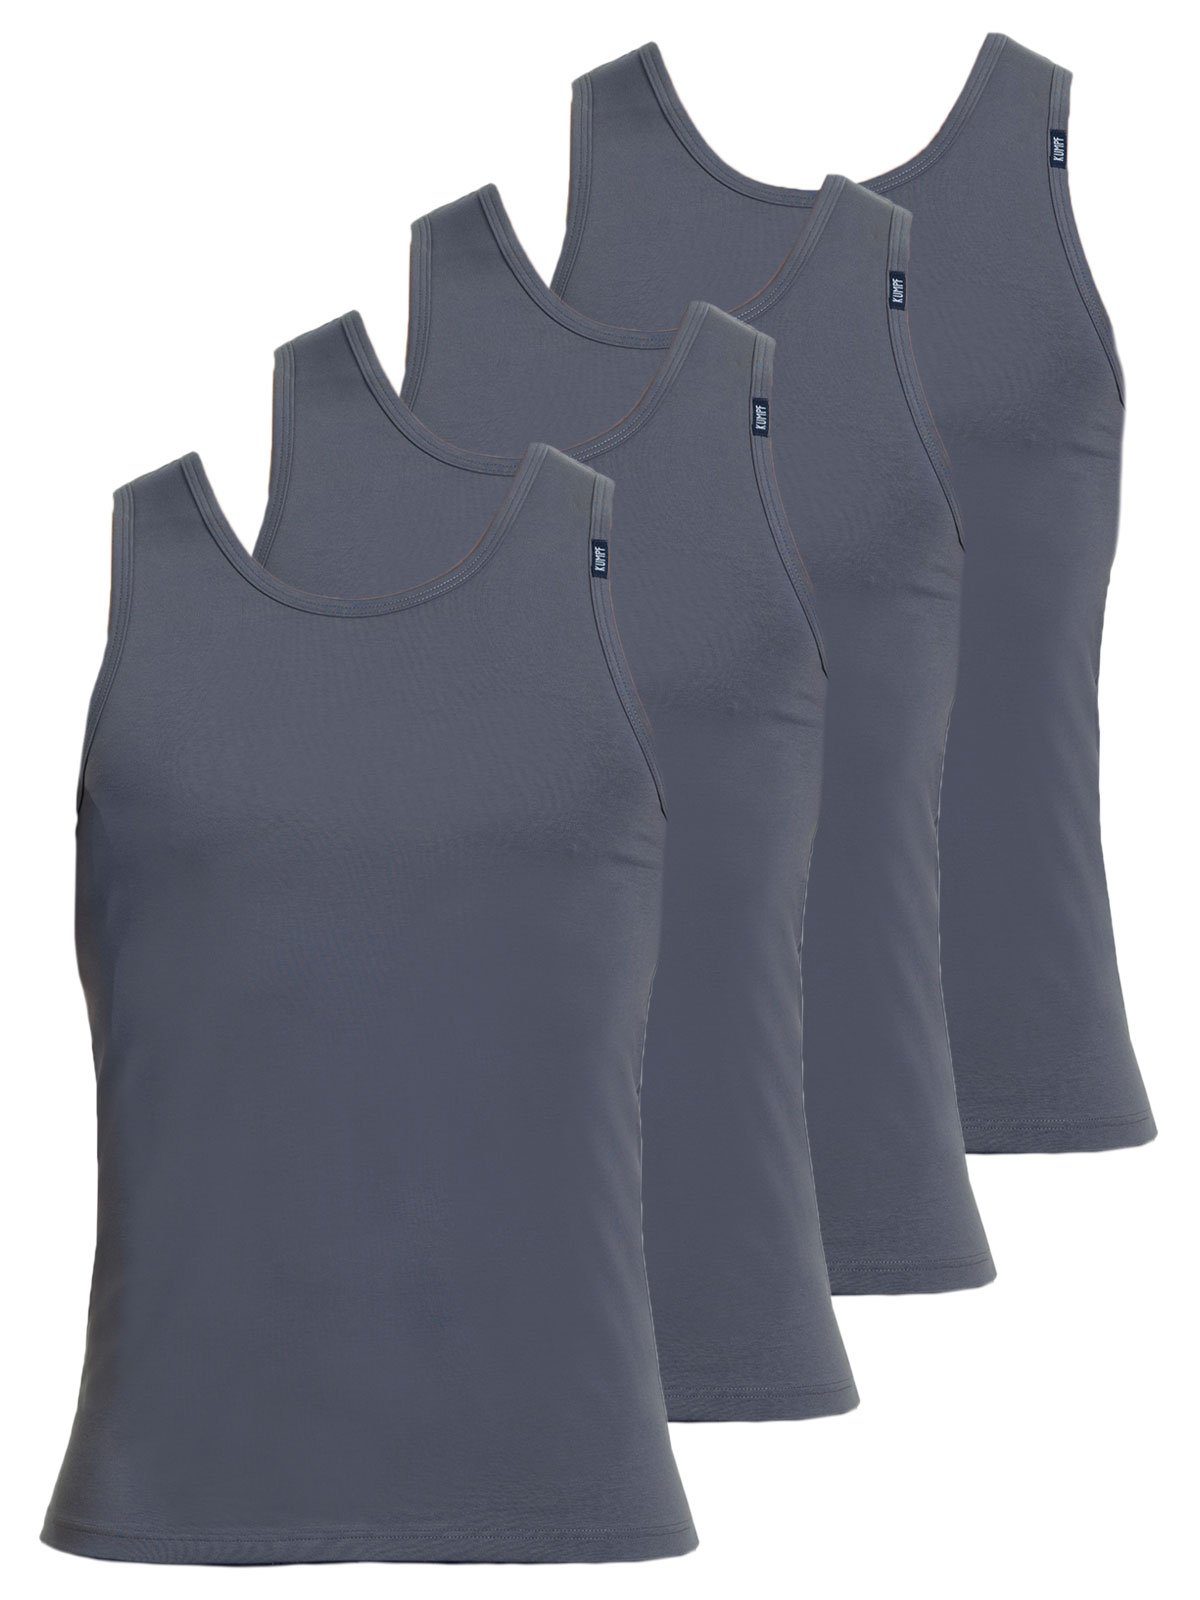 KUMPF Achselhemd 4er Sparpack Cotton (Spar-Set, Unterhemd 4-St) Herren Markenqualität mittelgrau Bio hohe